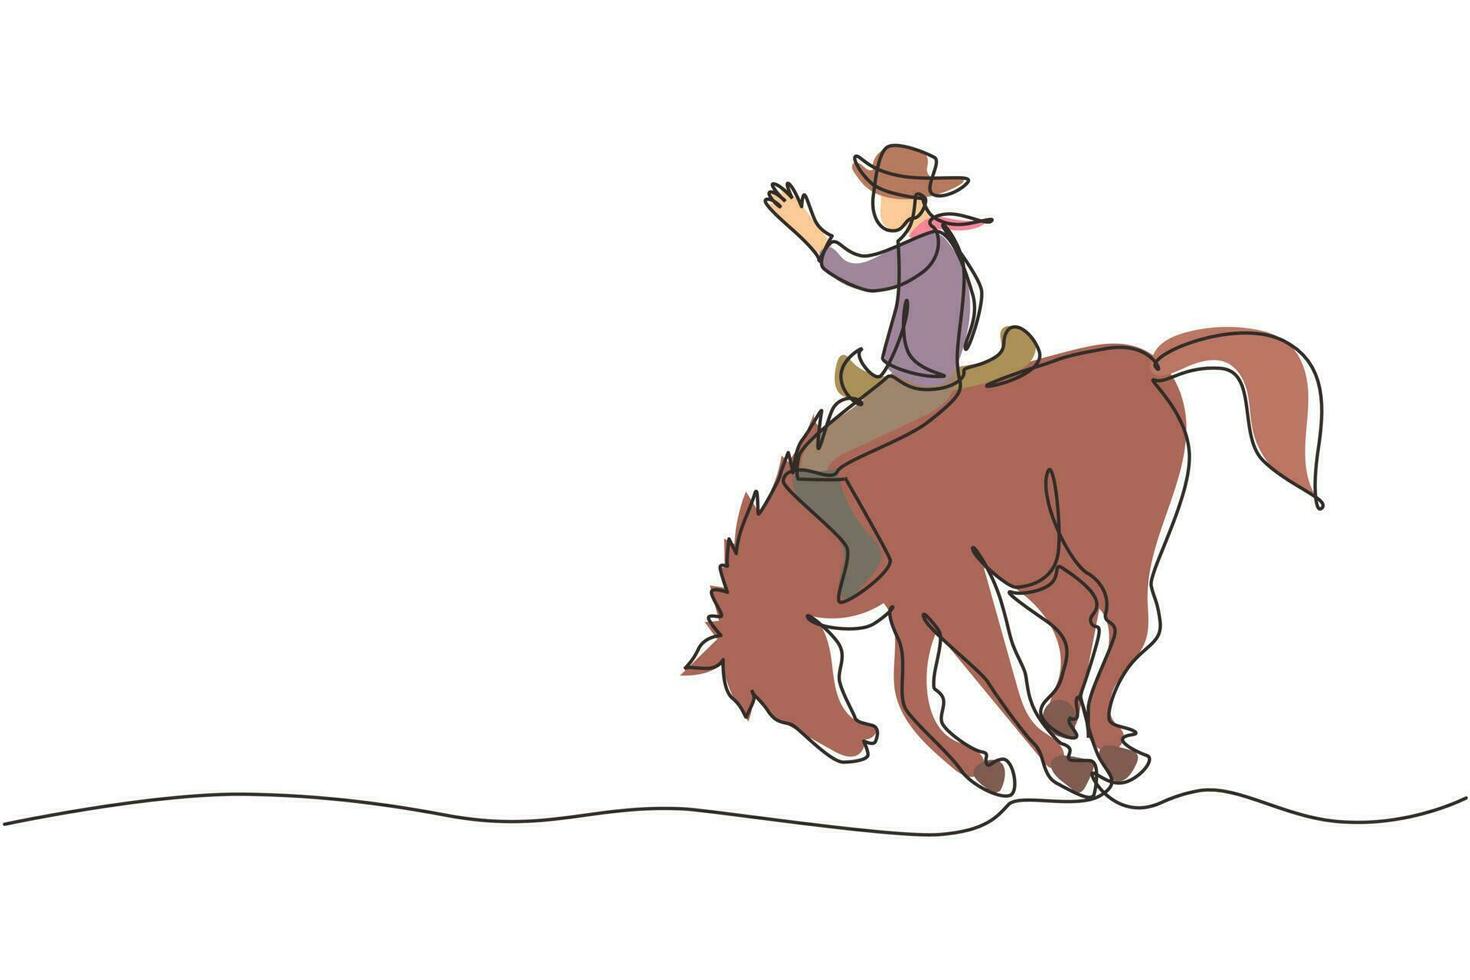 kontinuerlig en rad ritning cowboy ridning bucking bronco vid solnedgången. rodeo cowboy på hästranch. vild hästkapplöpning. cowboy som tämjer vild häst på rodeo. enda rad rita design vektorgrafisk illustration vektor